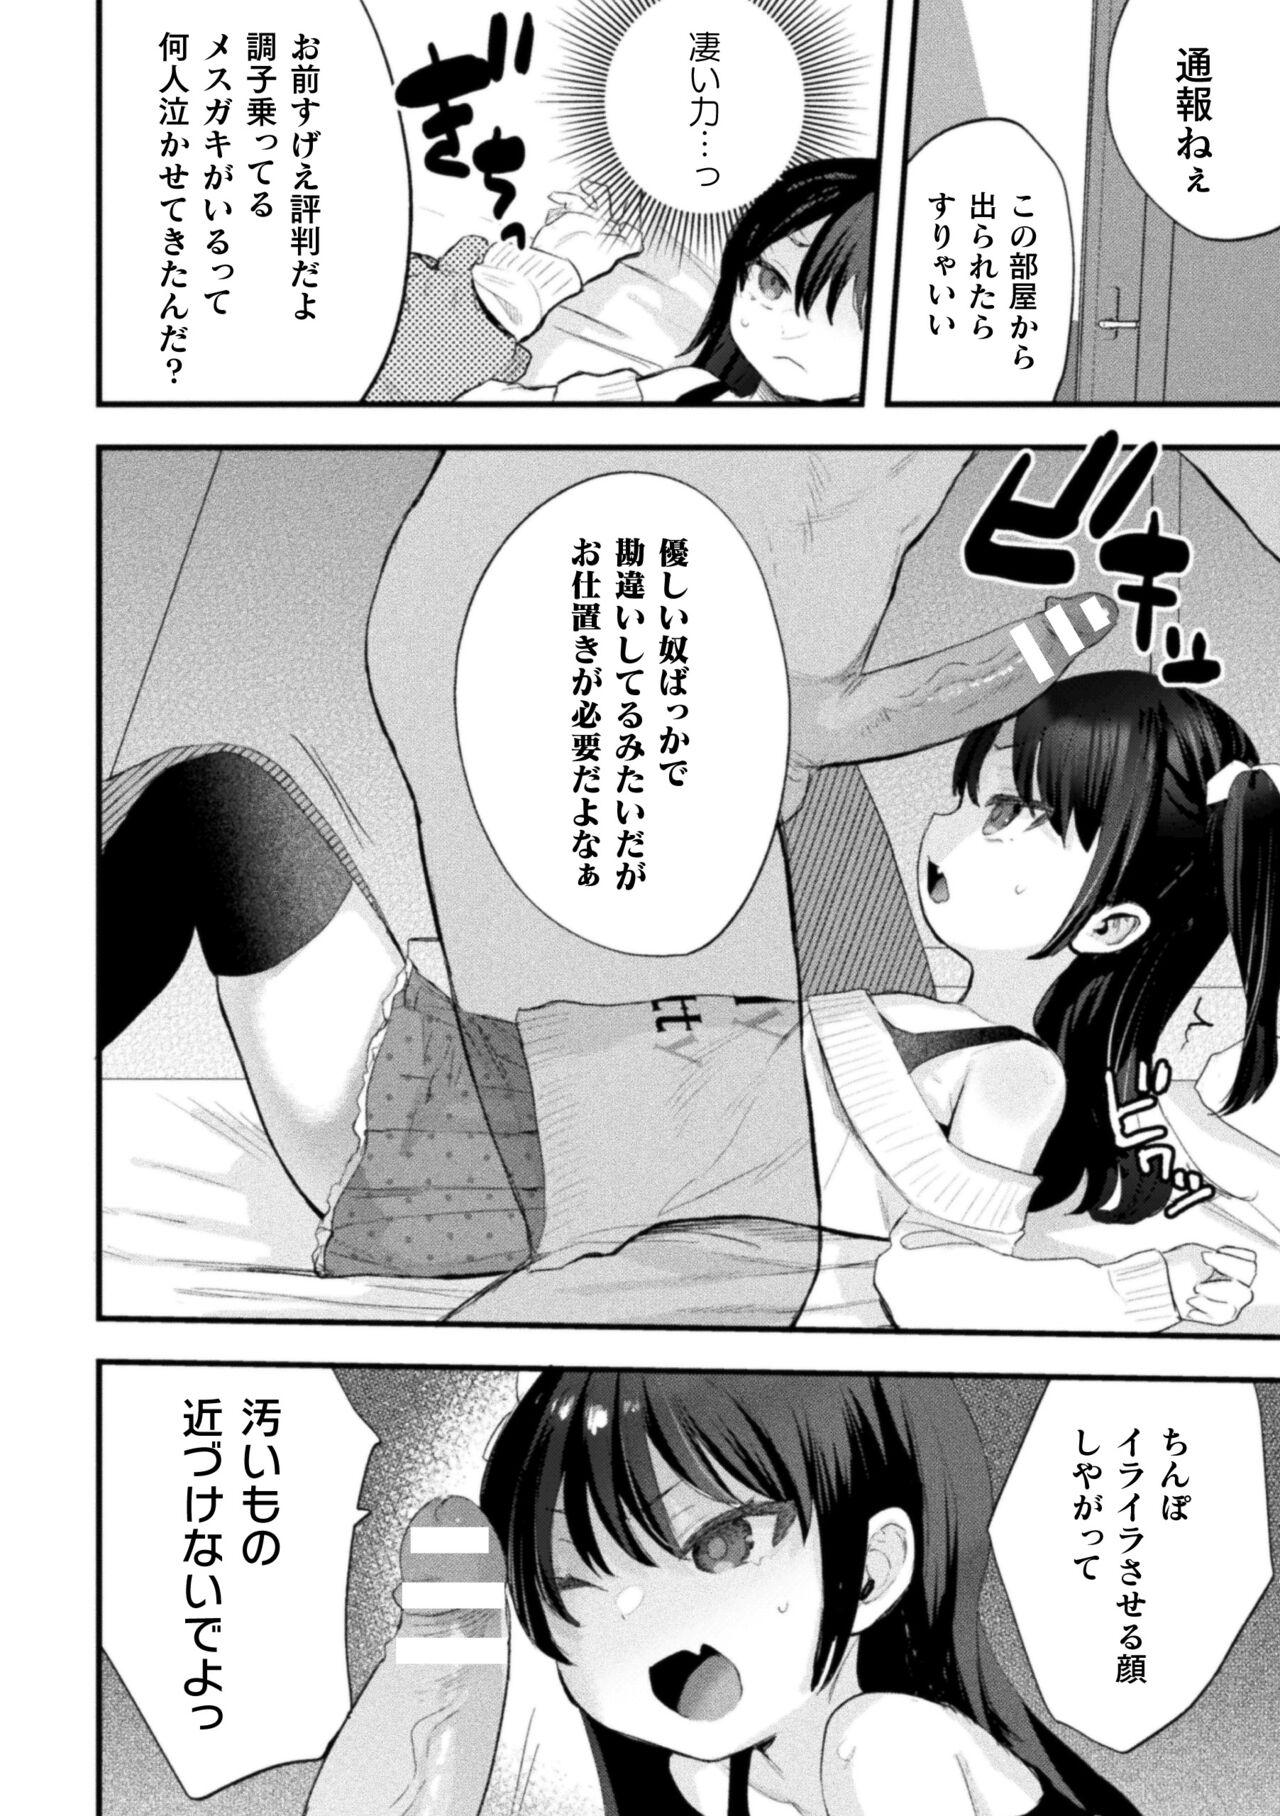 Girls Nijigen komikku magajin mesugakipapa katsu seisai o teate wa niku bō ikkatsu wakara se harai Vol. 1 Bunduda - Page 10